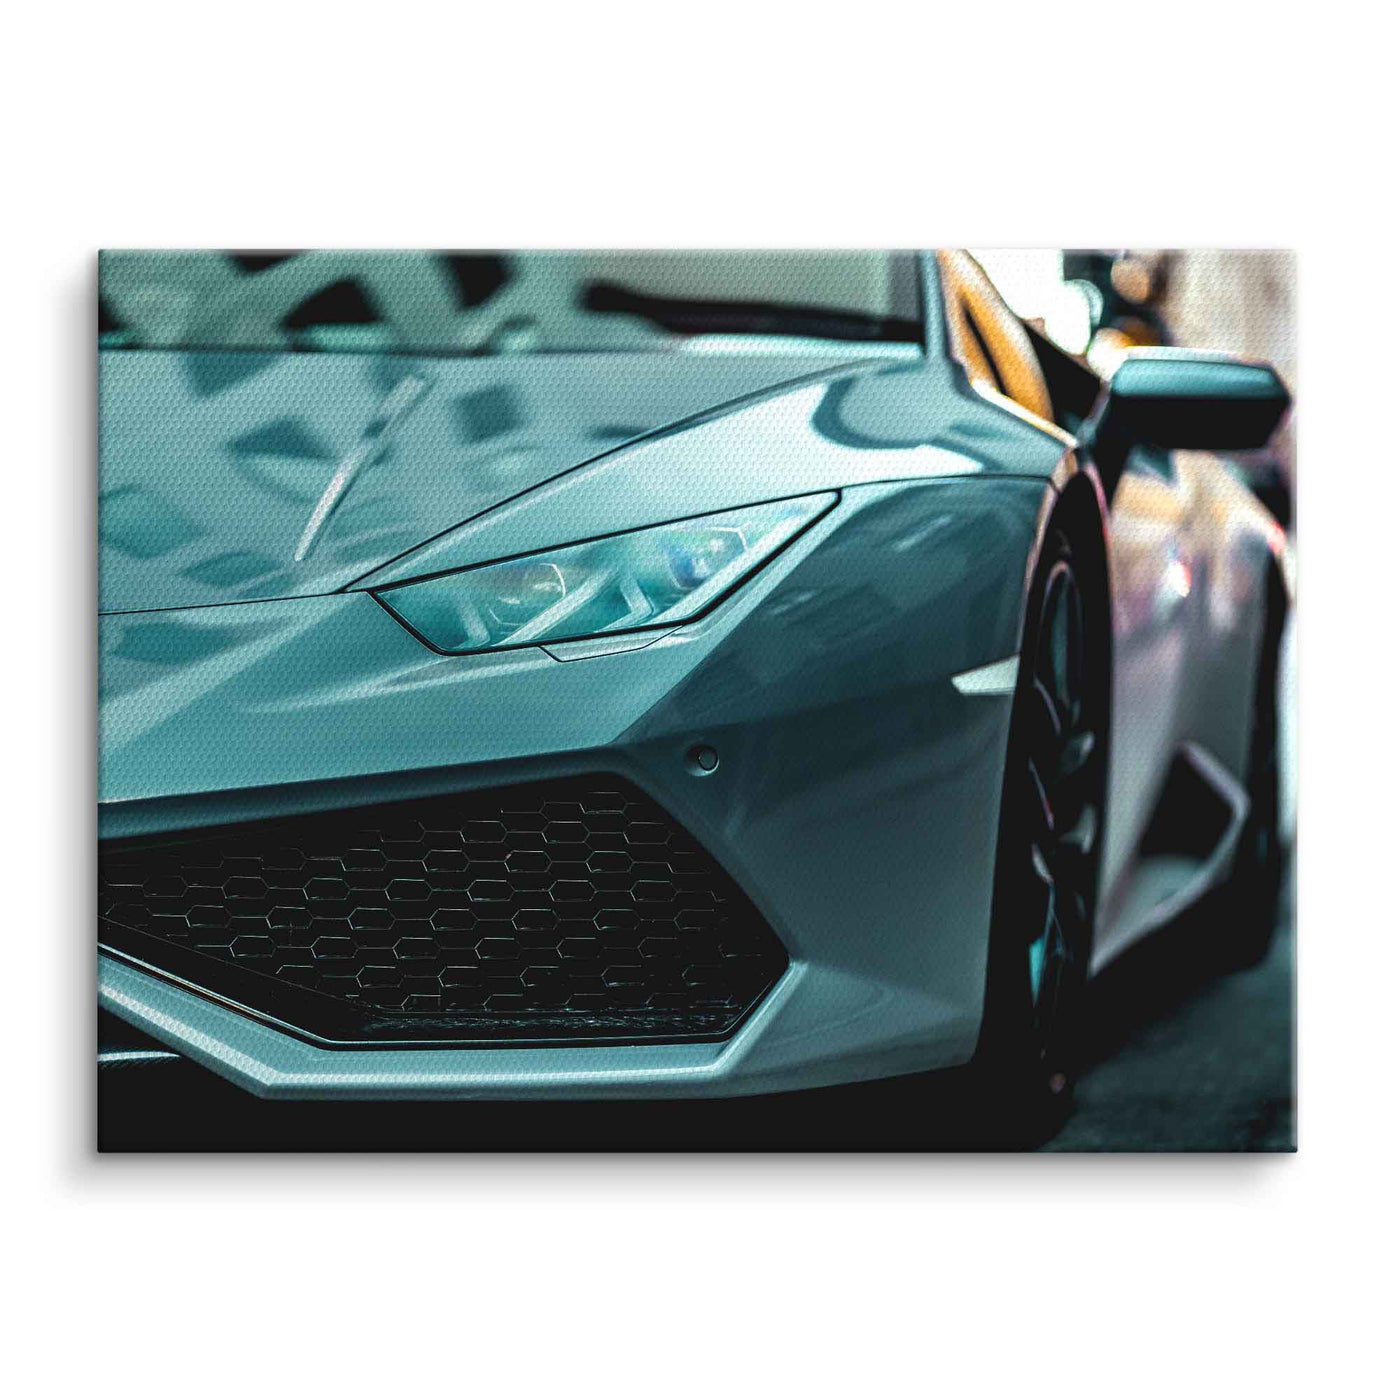 Lamborghini - Huracan